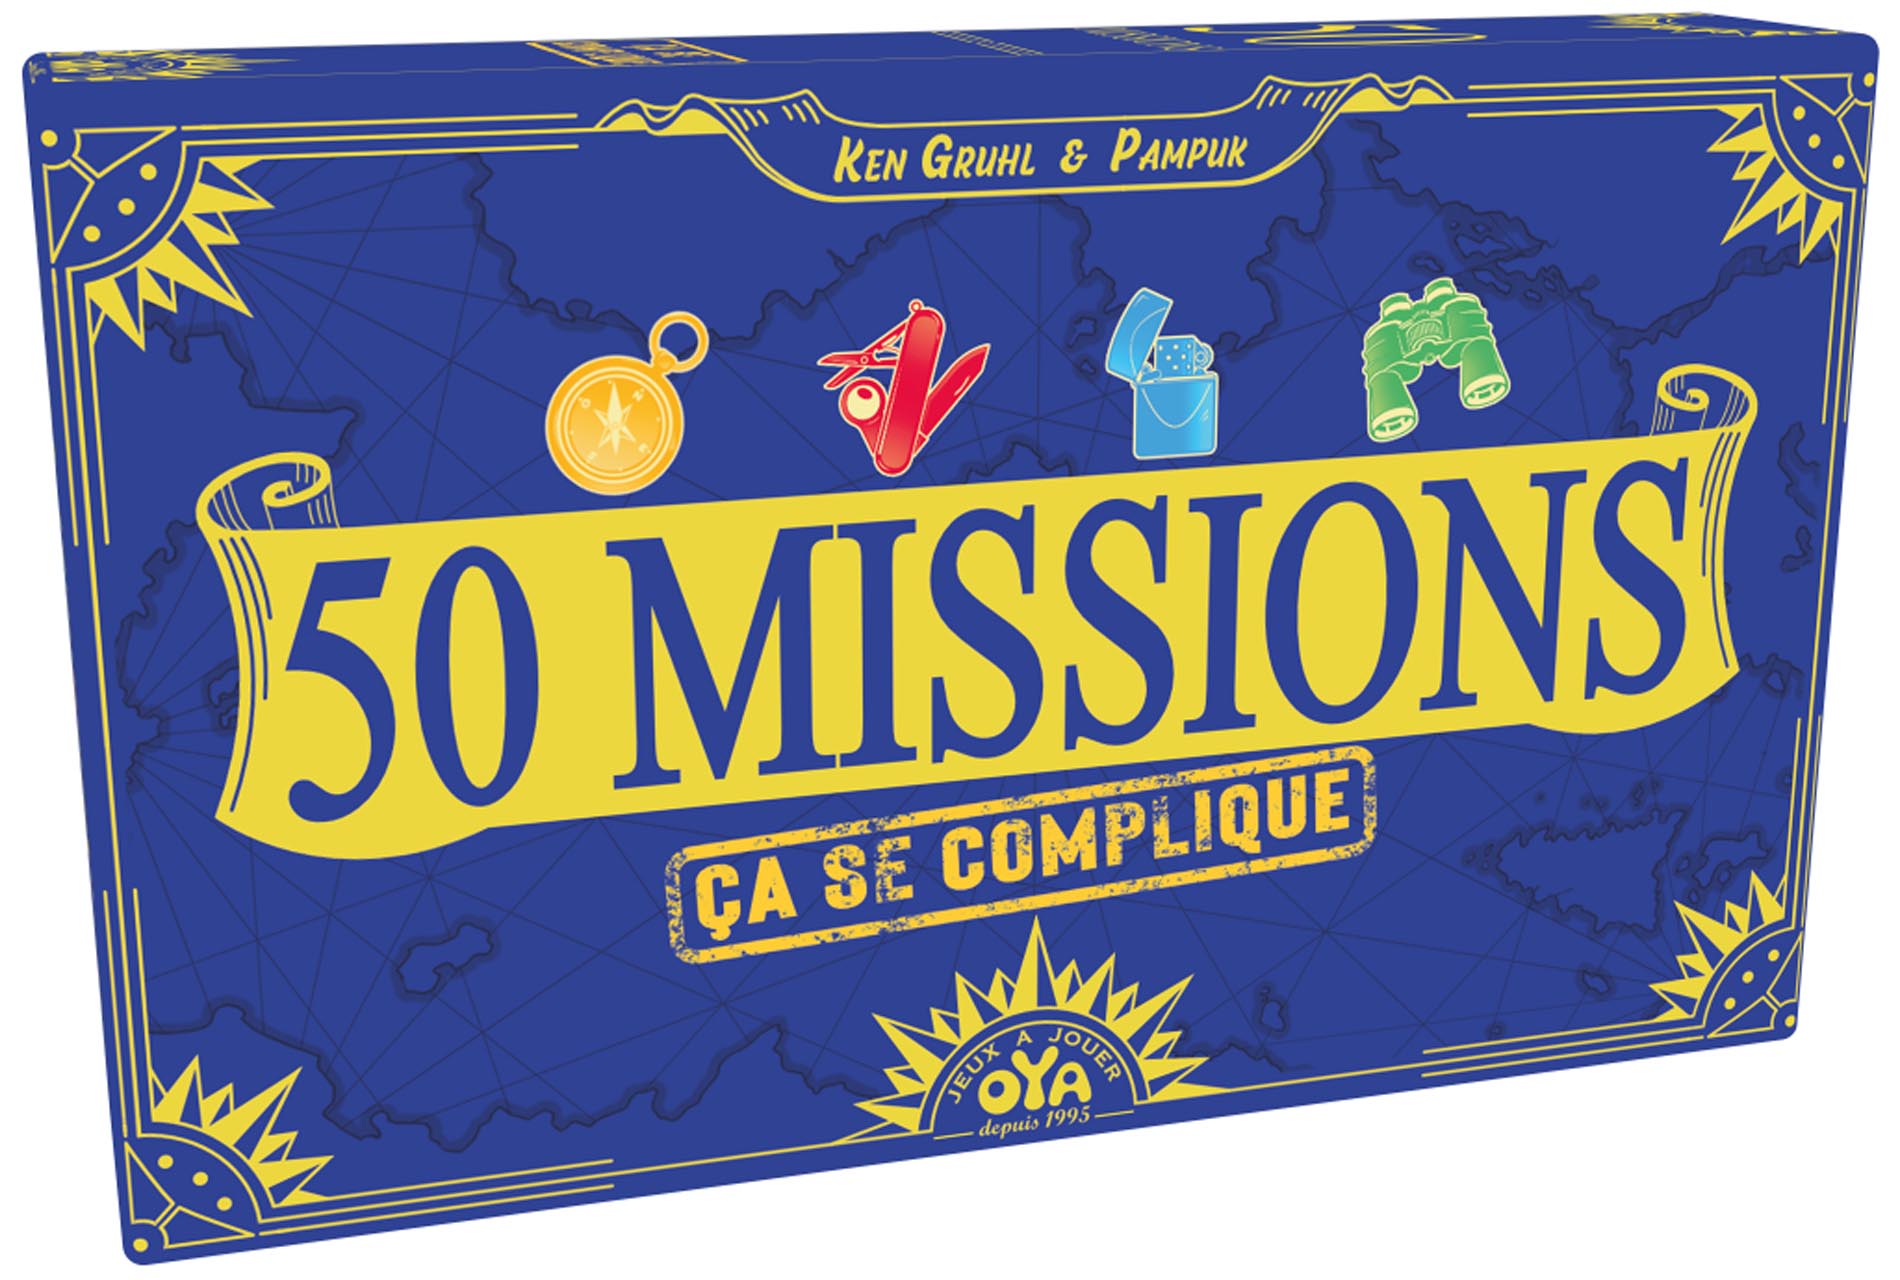 50 Missions ça se complique